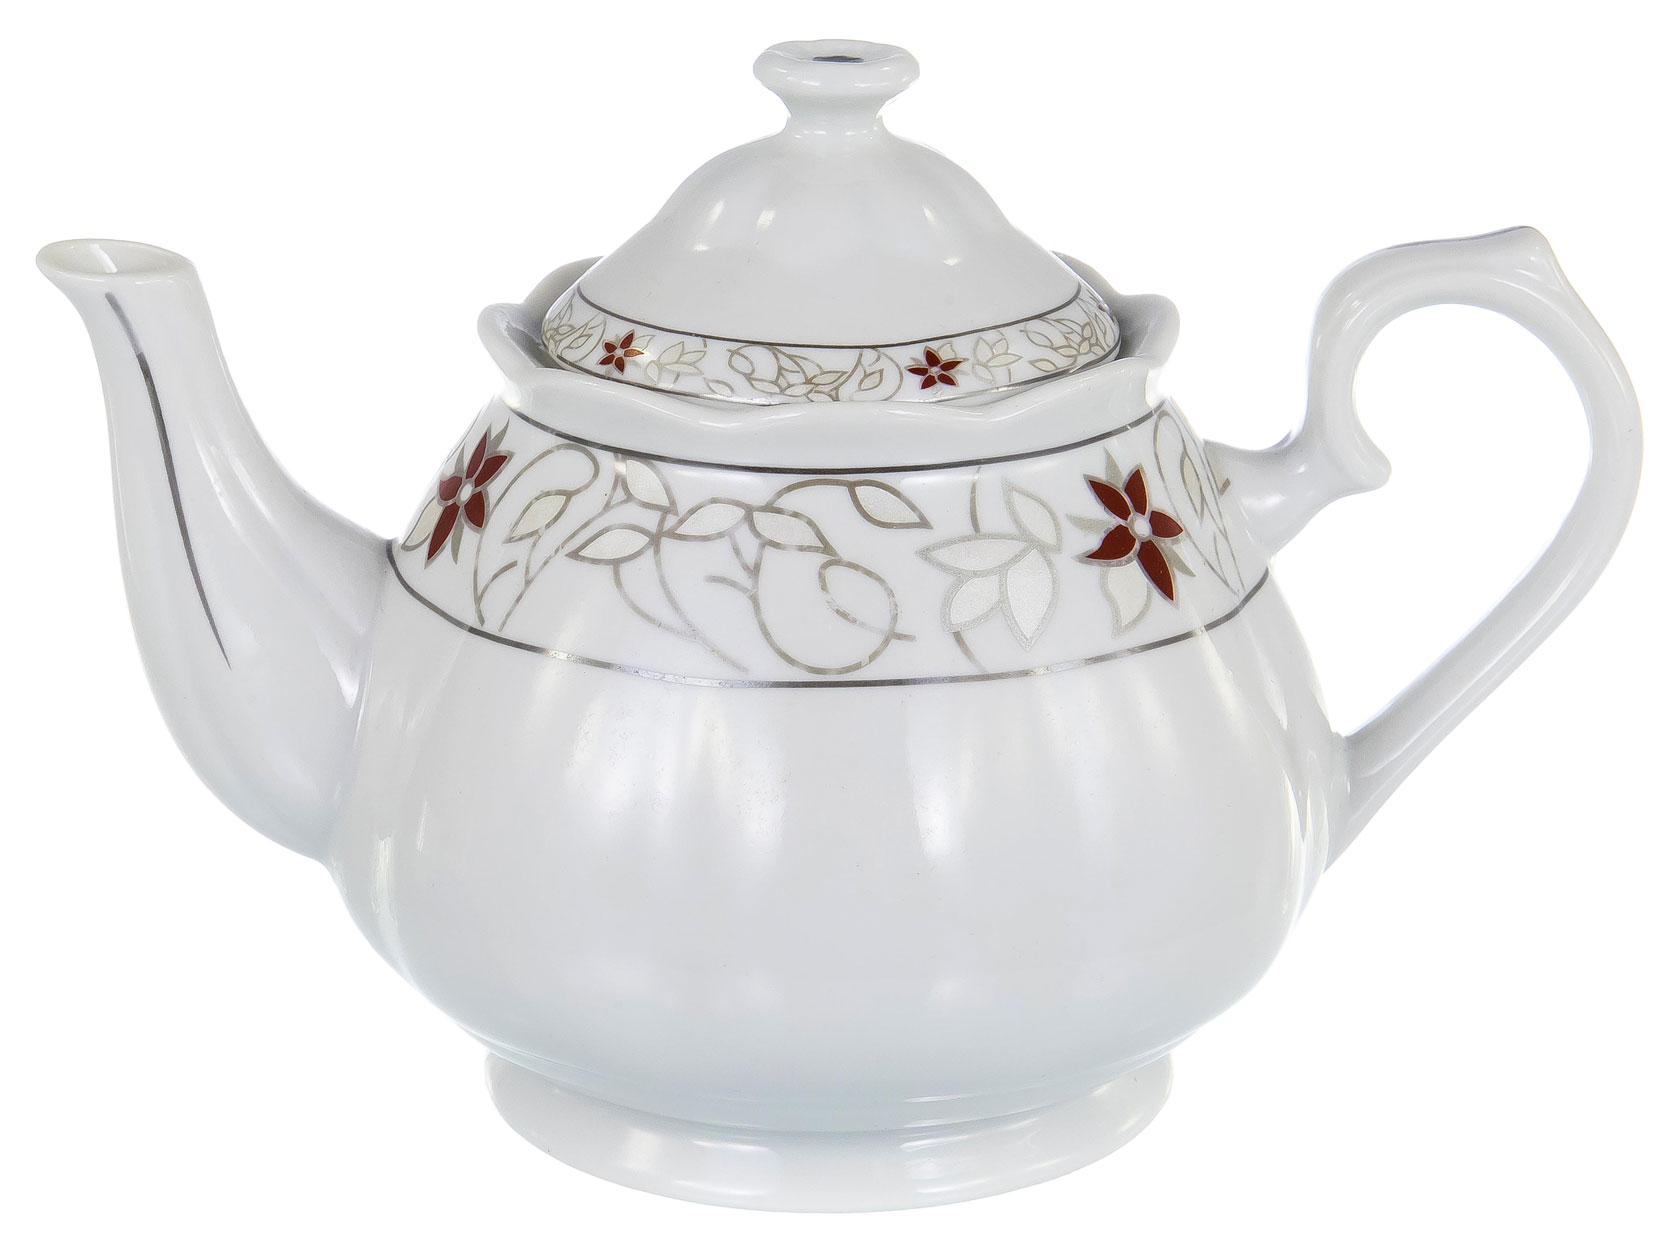 Заварочный чайник 114-19054 Фуруд фото 1